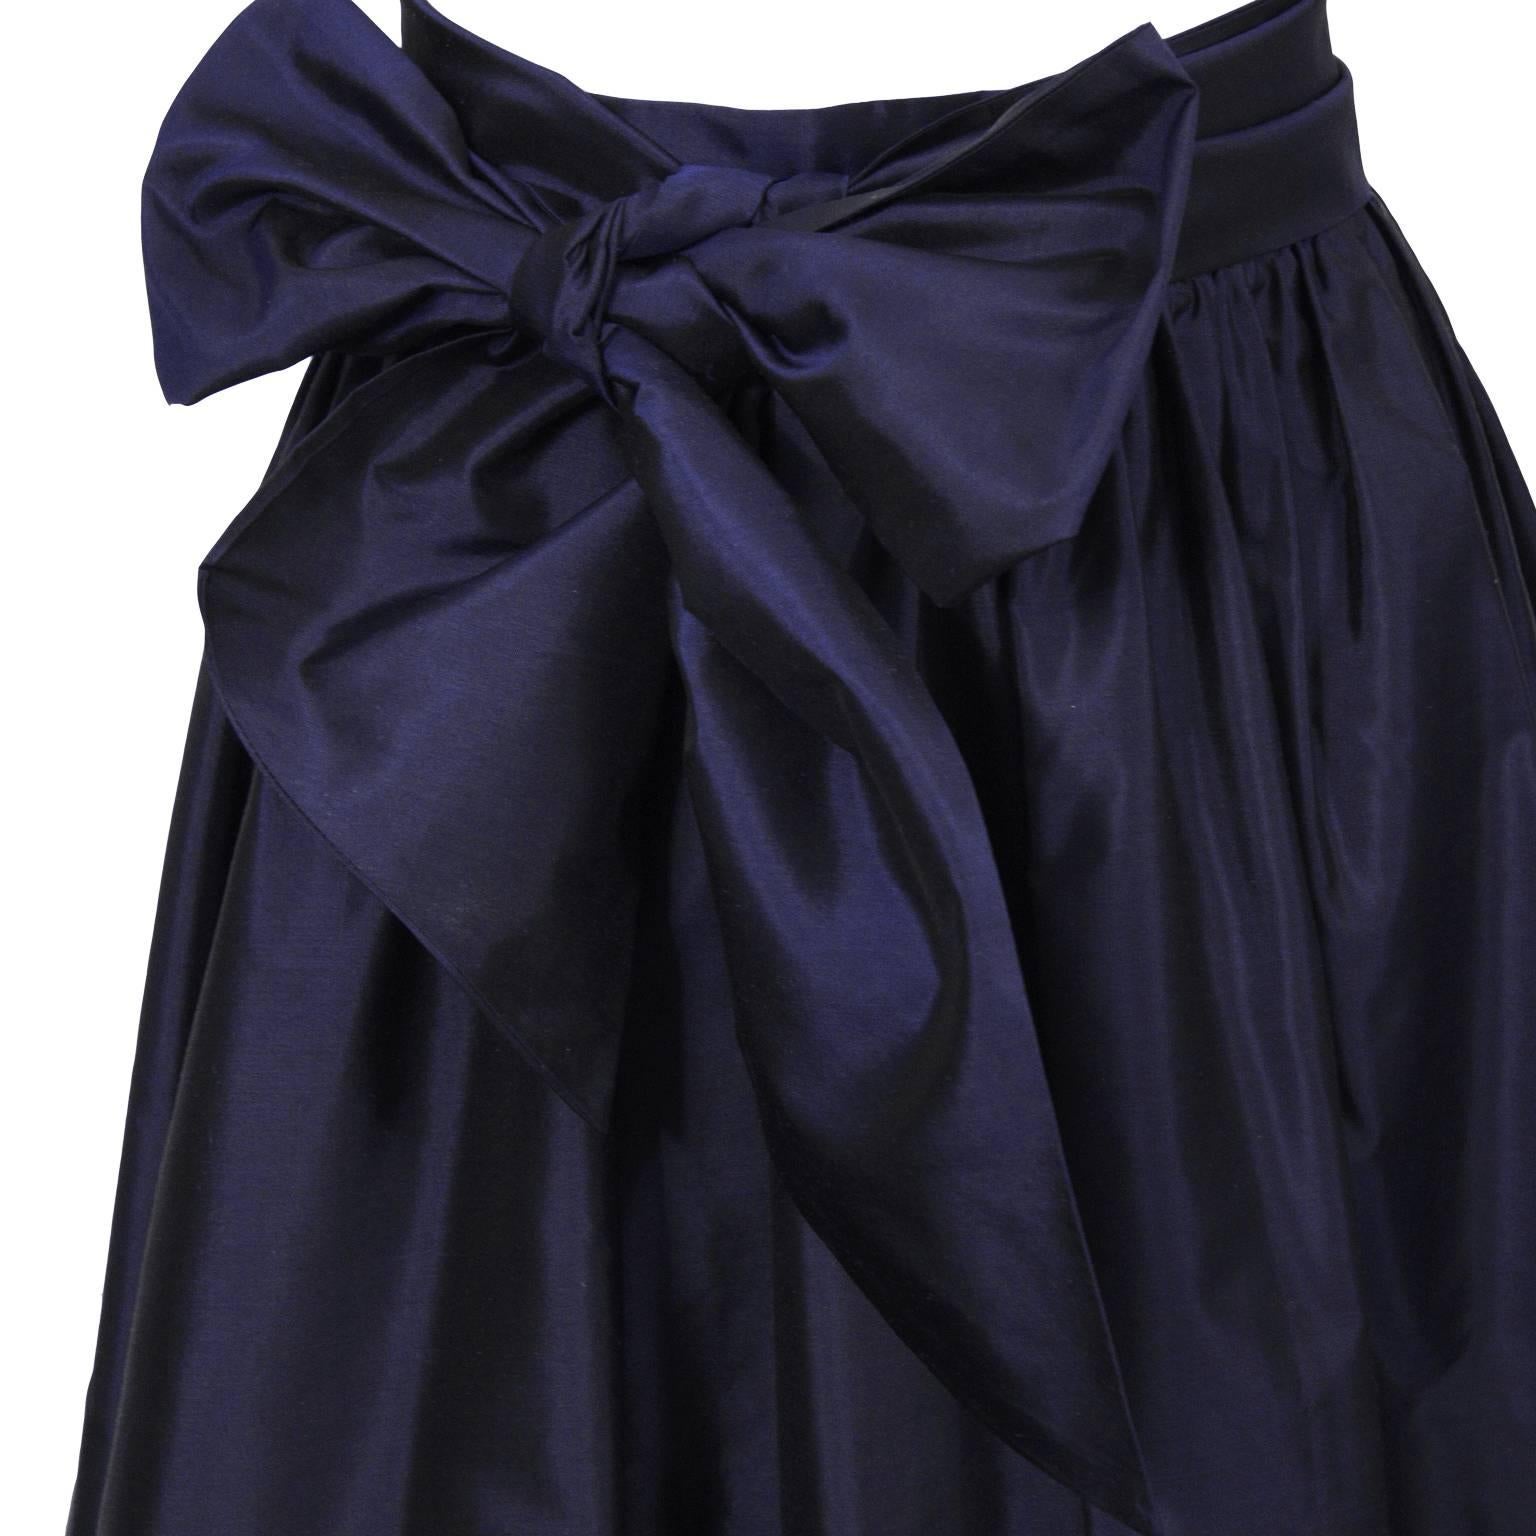 taffeta ball gown skirt